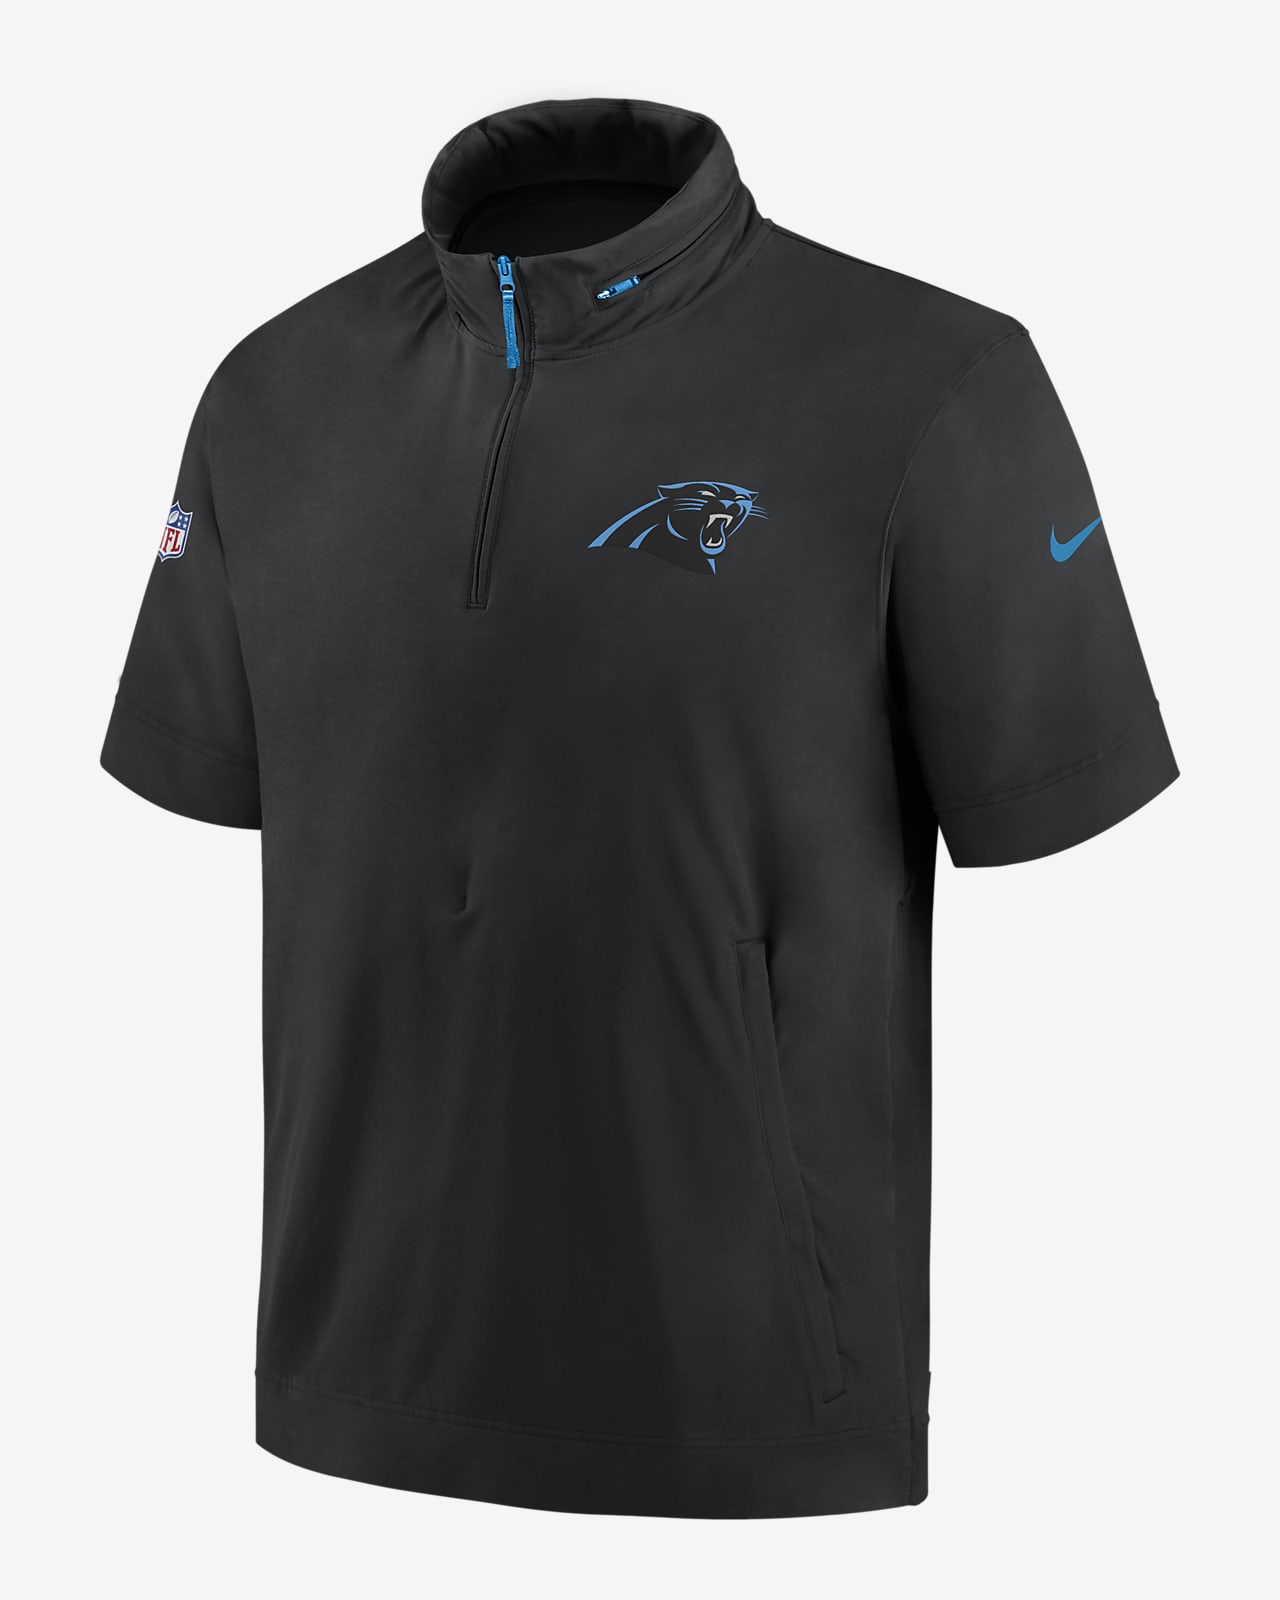 Chamarra de manga corta Nike de la NFL con gorro y medio cierre para hombre Carolina Panthers Sideline Coach